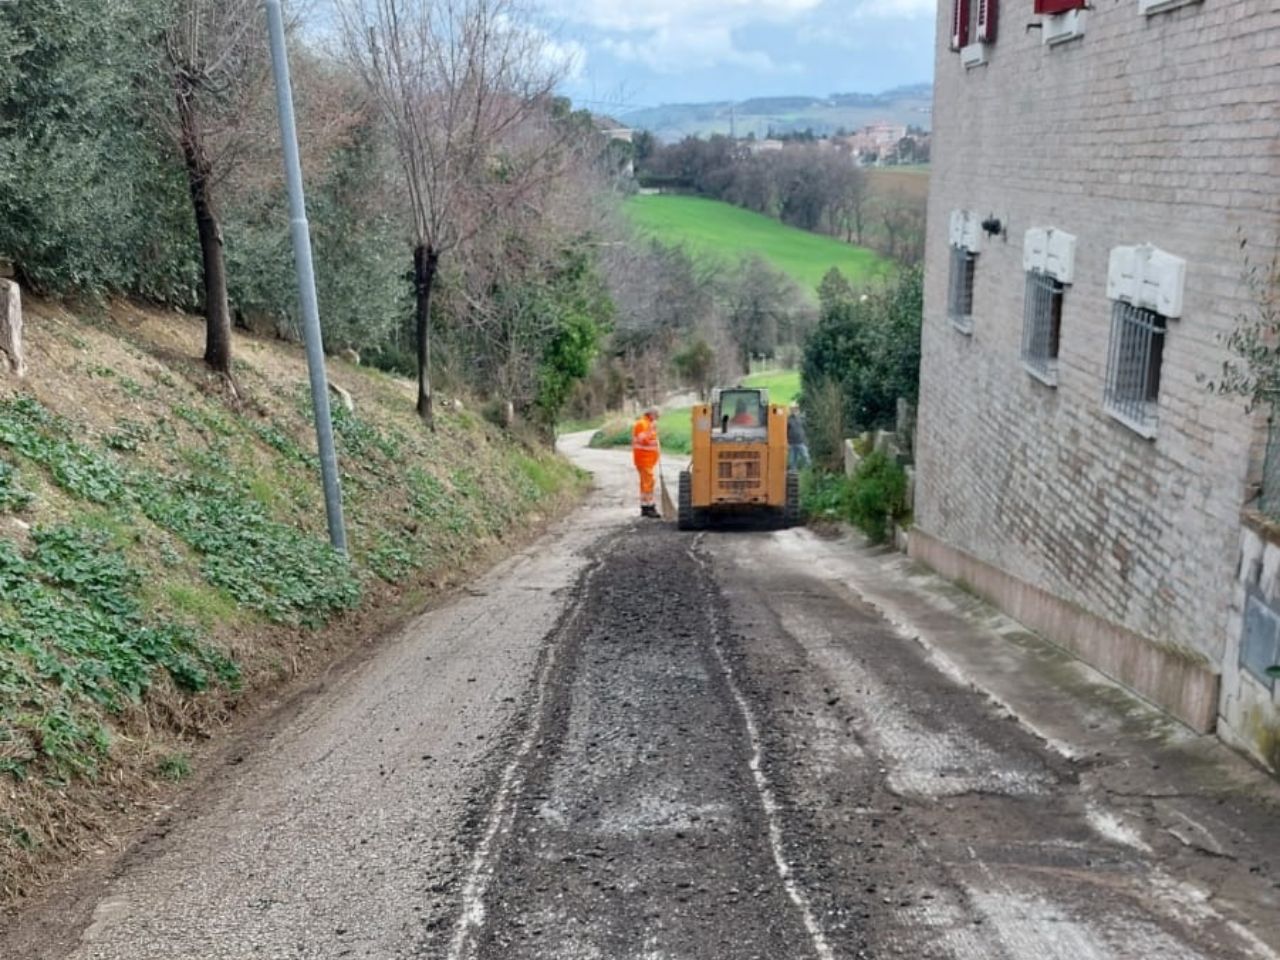 Nuovo asfalto in Via Tabano: a seguire lavori in quattro rotatorie